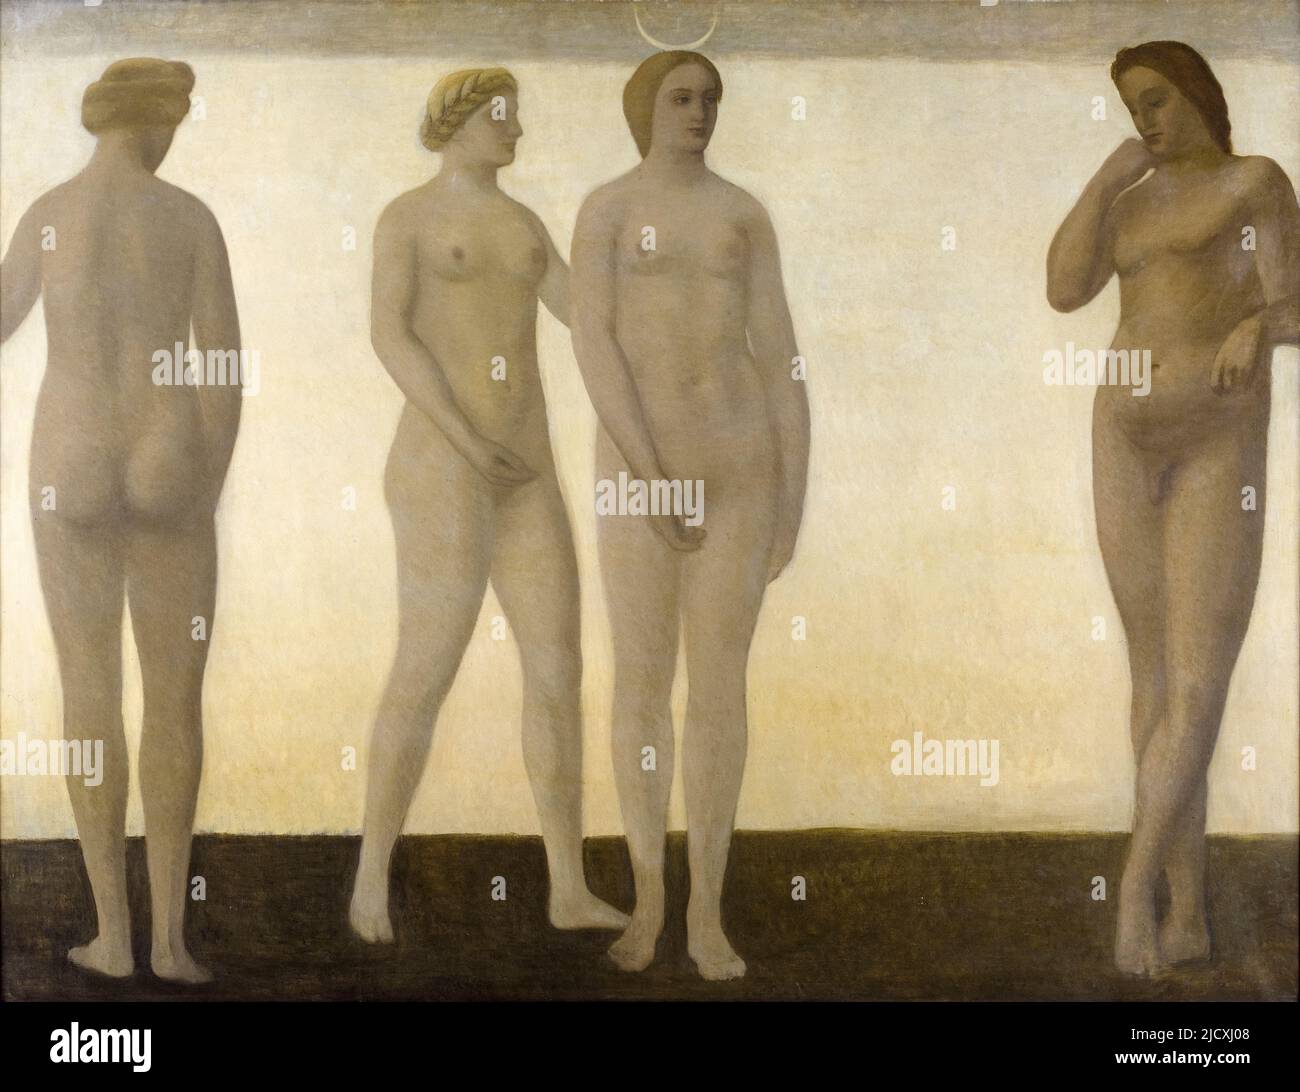 Vilhelm Hammershoi, Artemis, peinture à l'huile sur toile, 1893-1894 Banque D'Images